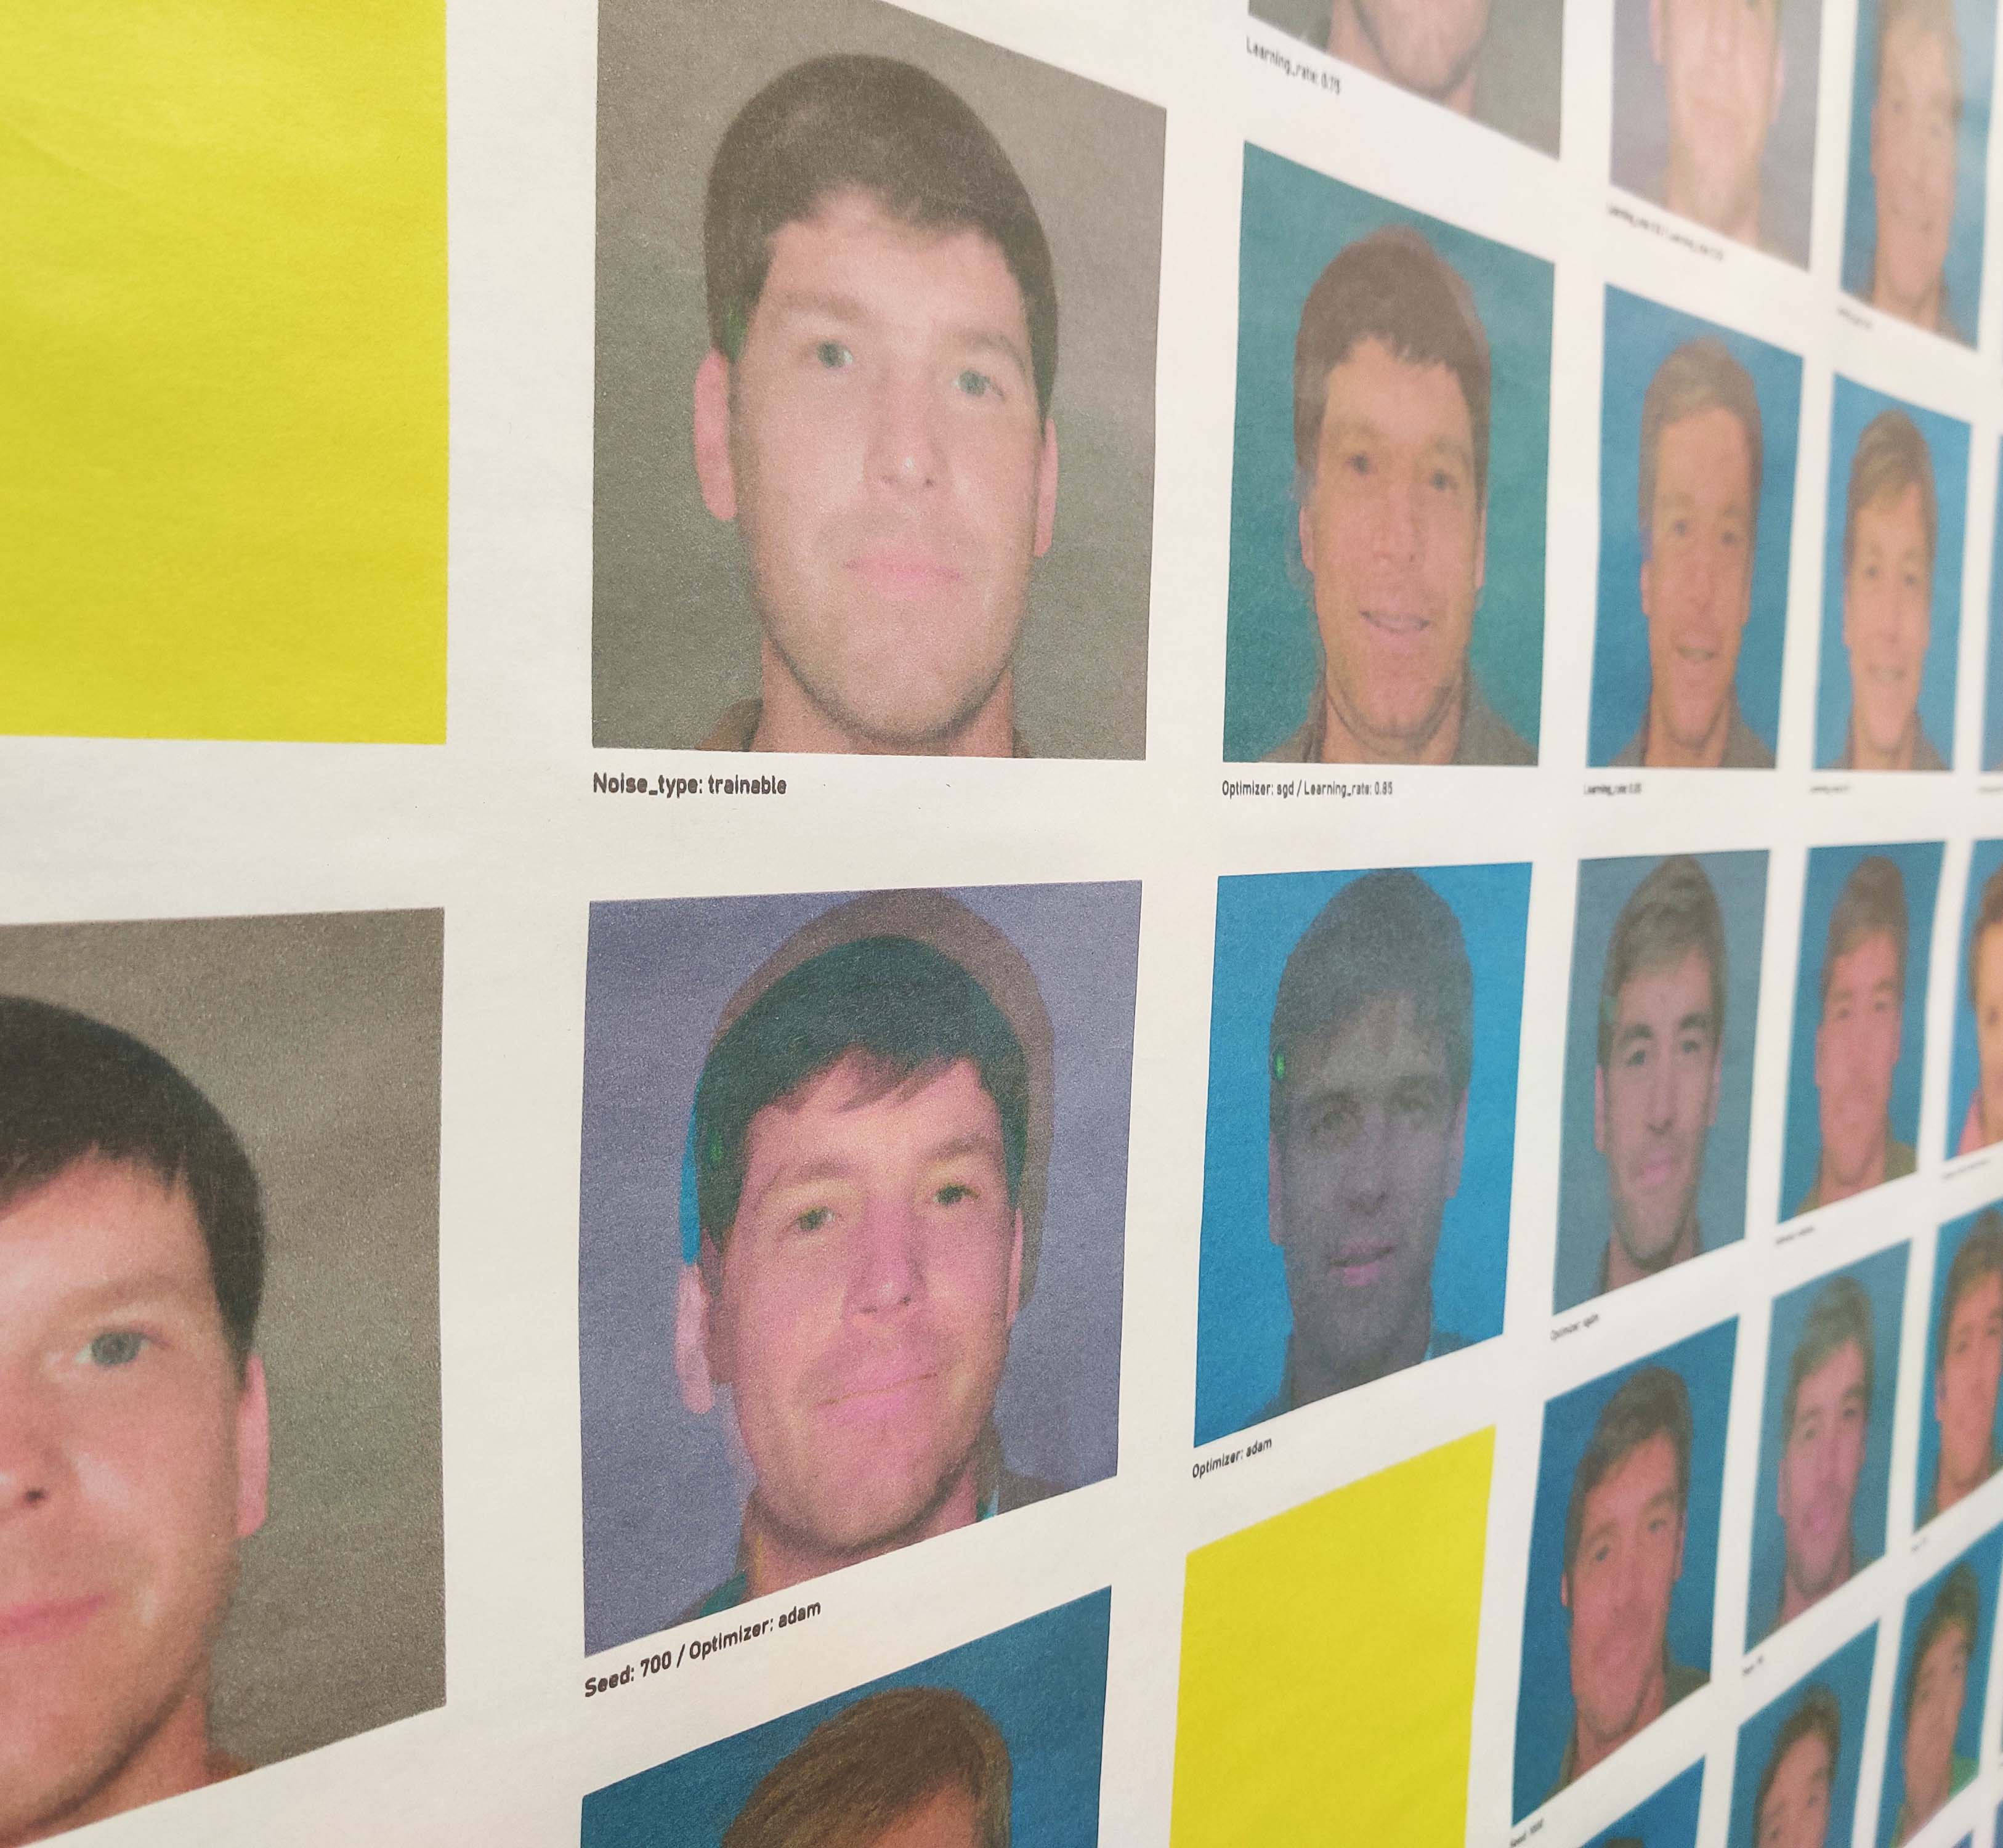 Detail foto op banner Possible Most Wanted Criminal Fugitives